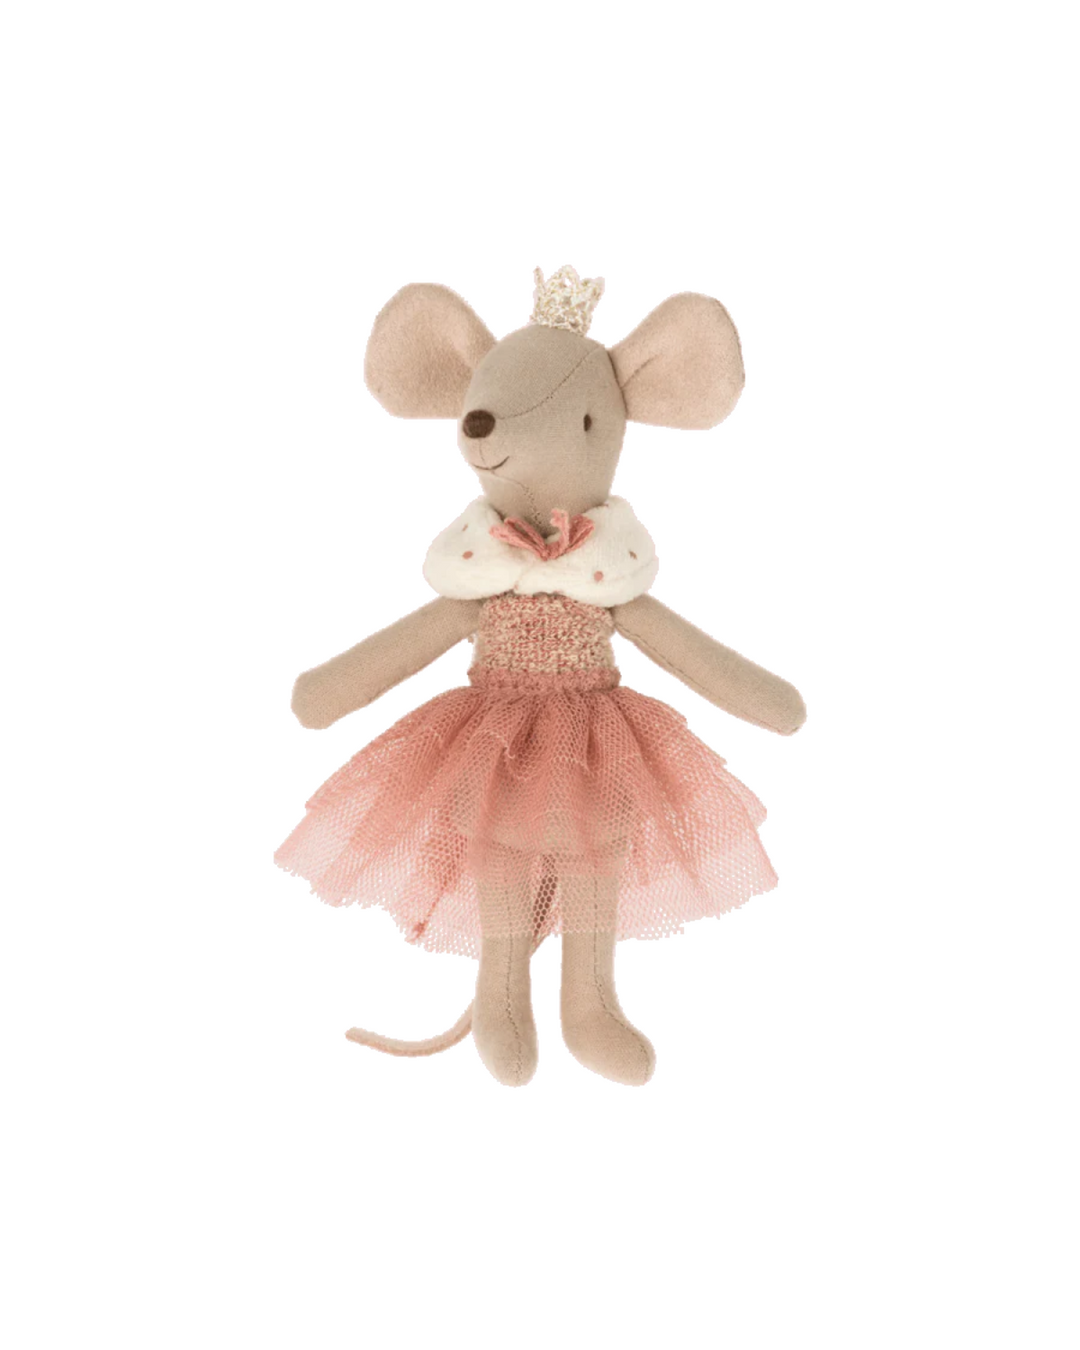 Princess Mouse, Big Sister - Dusty Rose (older version)